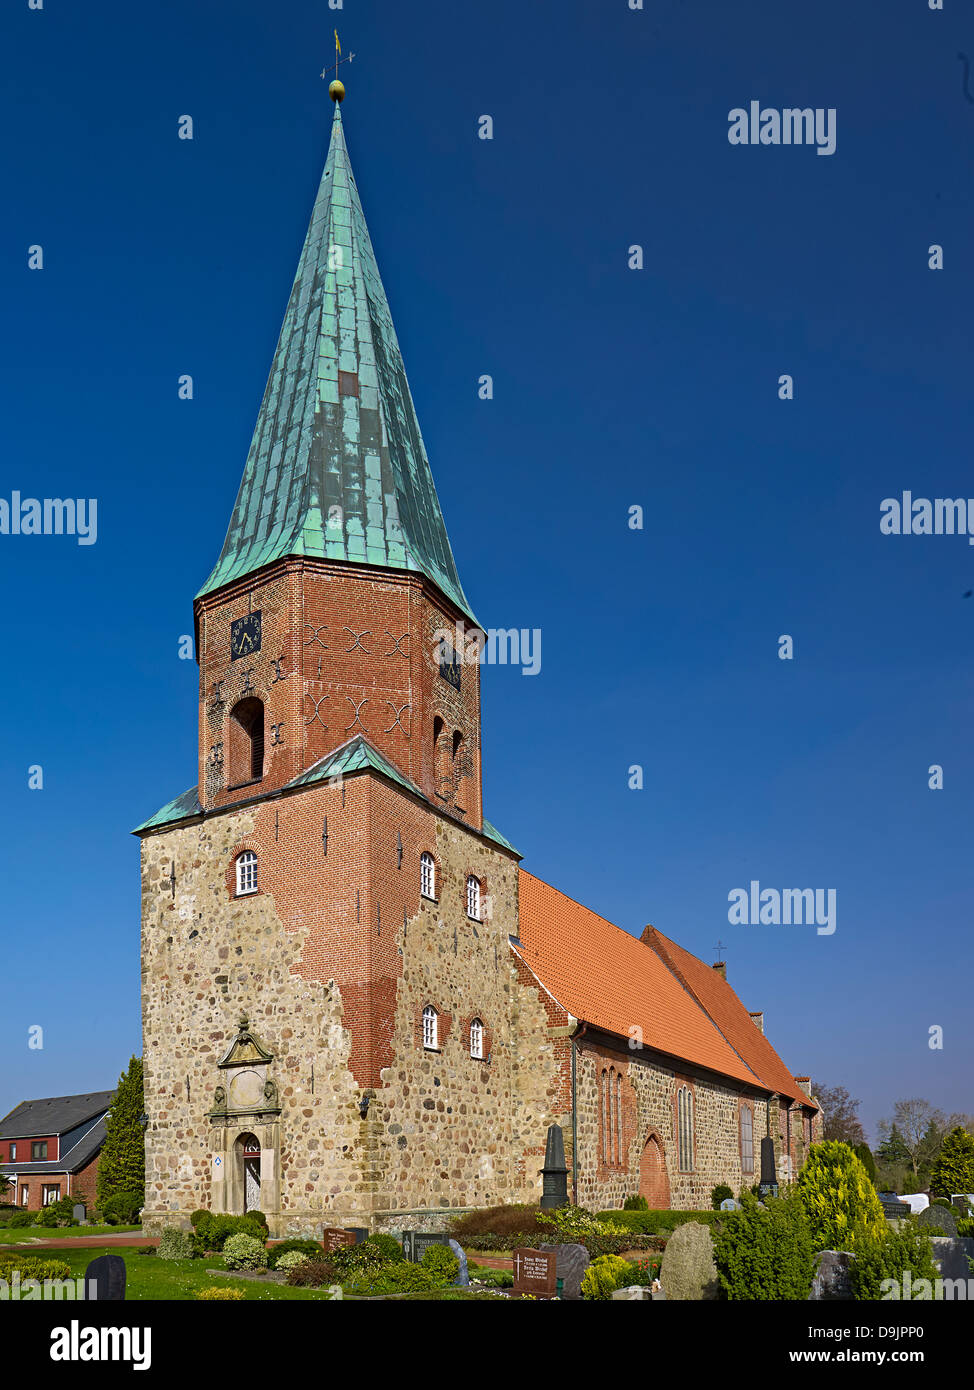 St.-Urban-Kirche in Dorum, Wursten, Landkreis Cuxhaven, Niedersachsen, Deutschland Stockfoto